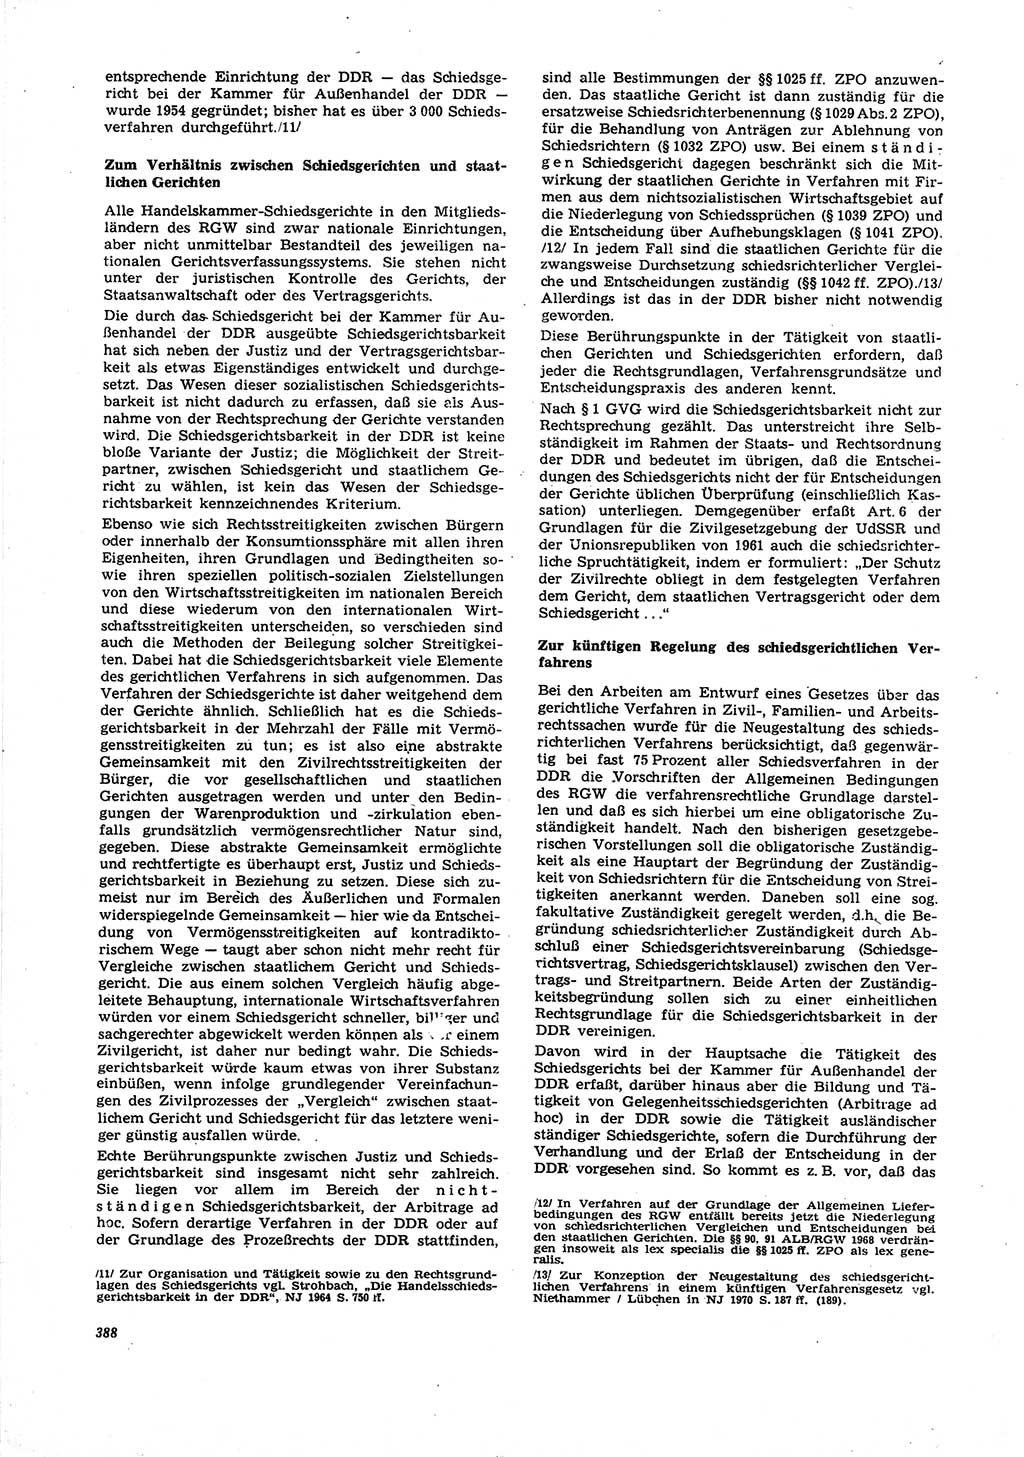 Neue Justiz (NJ), Zeitschrift für Recht und Rechtswissenschaft [Deutsche Demokratische Republik (DDR)], 27. Jahrgang 1973, Seite 388 (NJ DDR 1973, S. 388)